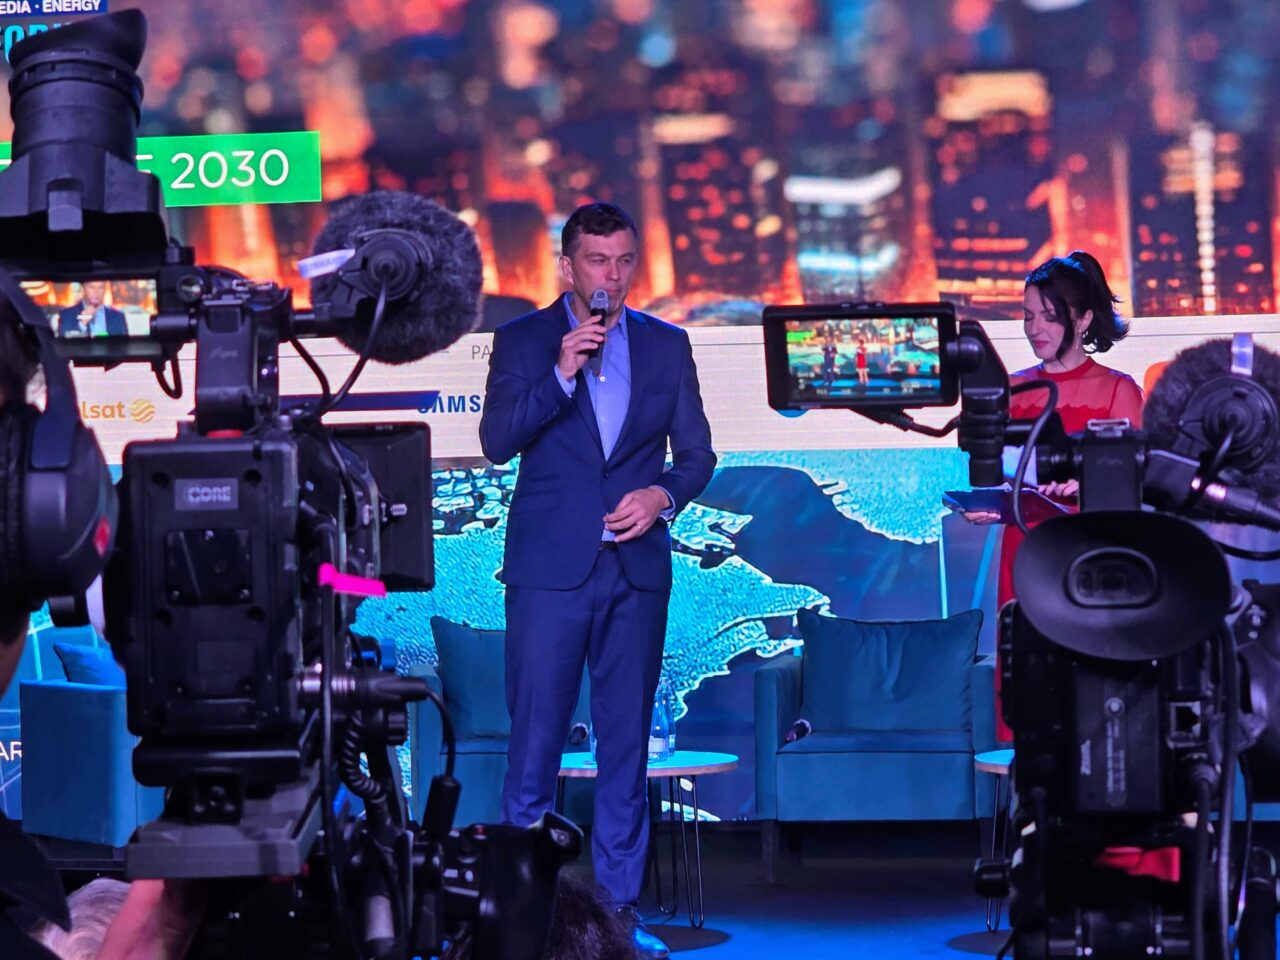 Drugi dzień 16. FG Time. Mężczyzna w garniturze przemawiający do mikrofonu na scenie przy dużej ekranie LED, kobieta w czerwonej sukni siedzi obok, widoczne kamery telewizyjne na pierwszym planie, tło sceny z miejską panoramą.